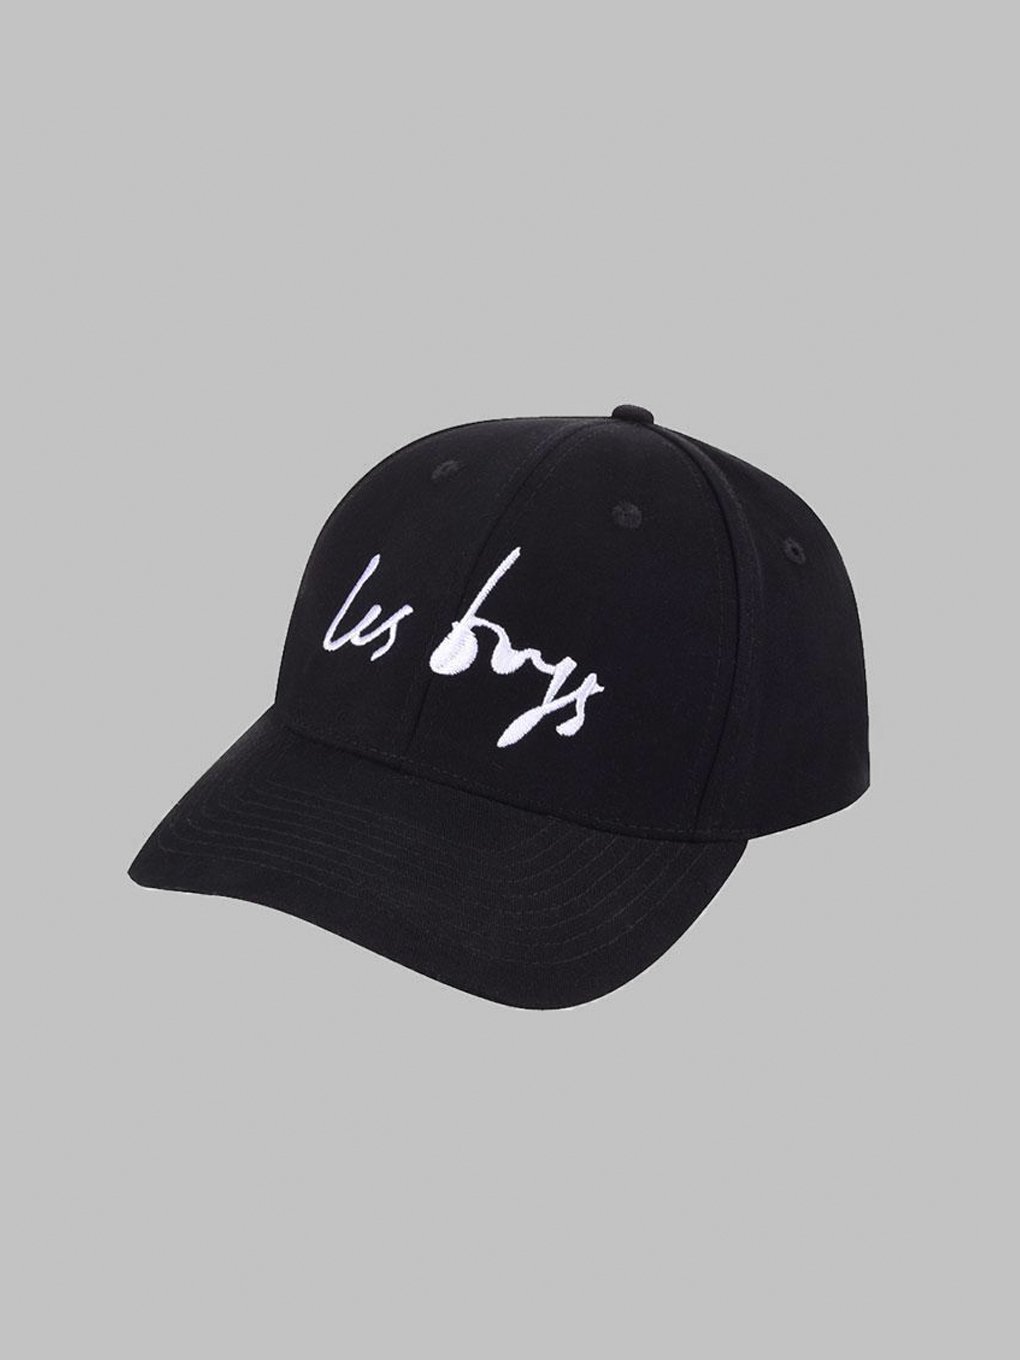 Image of LESGIRLSLESBOYS BLACK CAP